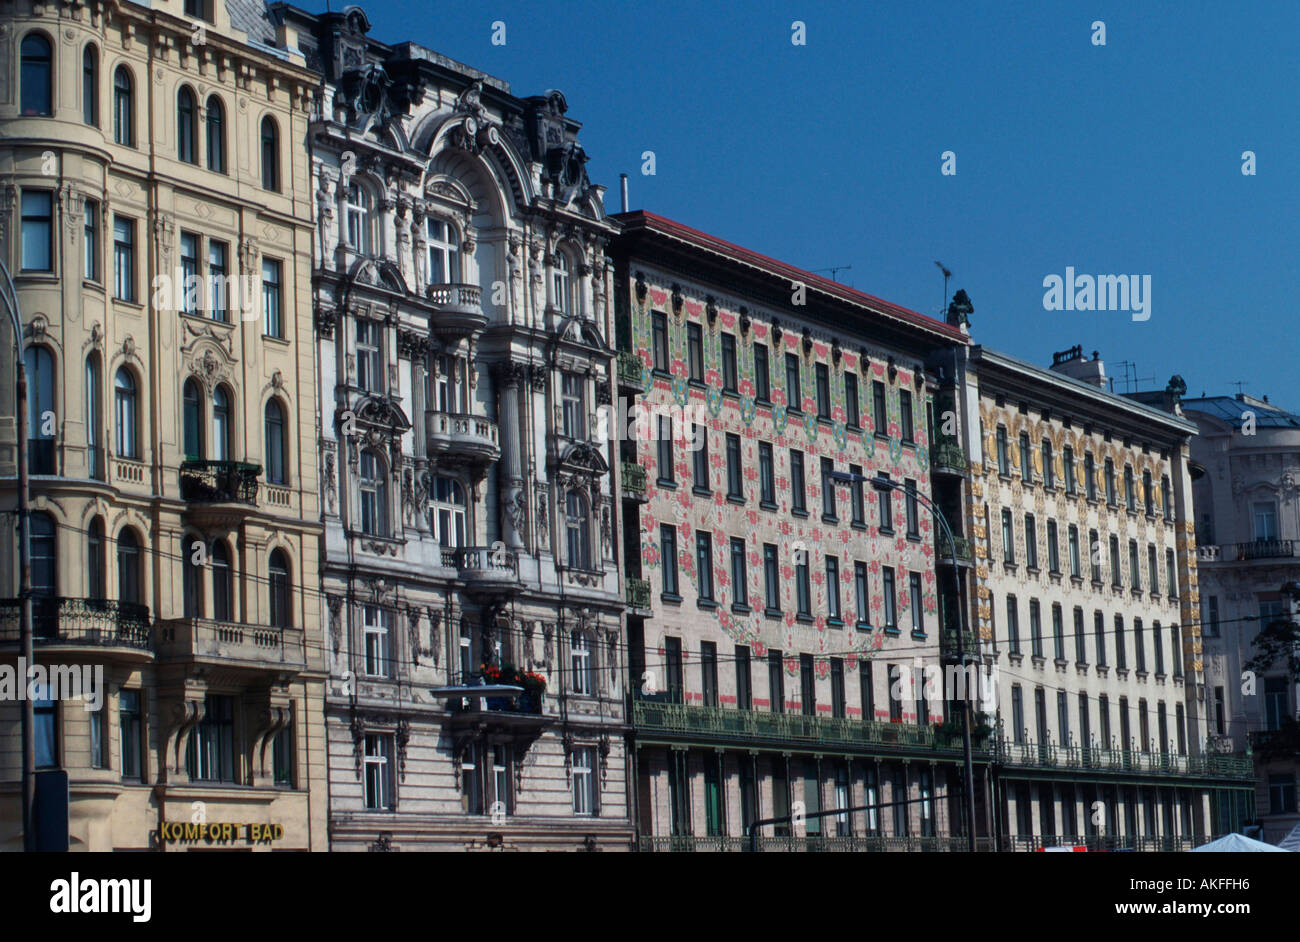 Wien VI., Linke Wienzeile, Wohnhäuser Nr. 44, 42, "Majolikahaus" Nr. 40 Und Wohnhaus Nr. 38 (Letztere 1898-99 von Otto Wagner) Stockfoto